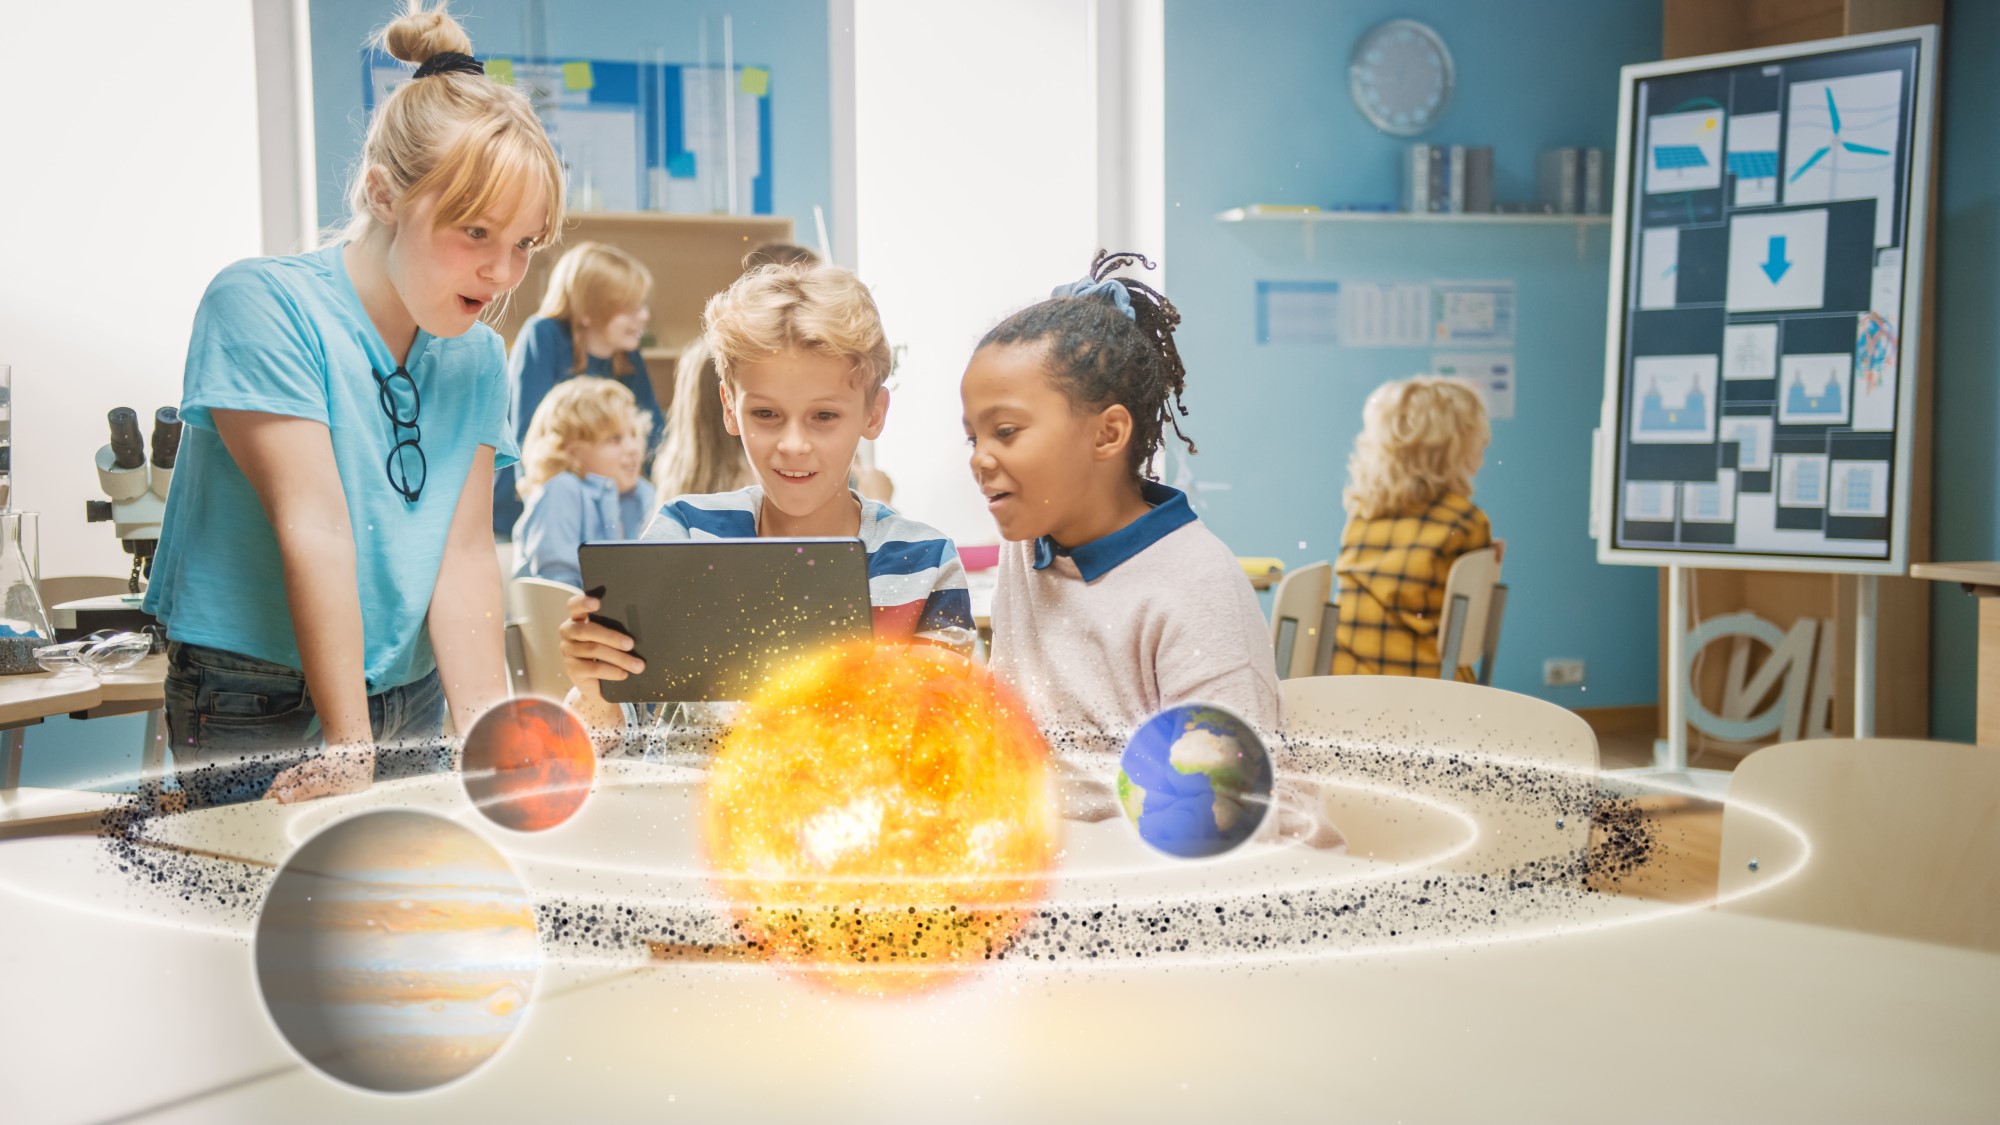 Des enfants découvre dans un ordinateur les planètes et étoiles